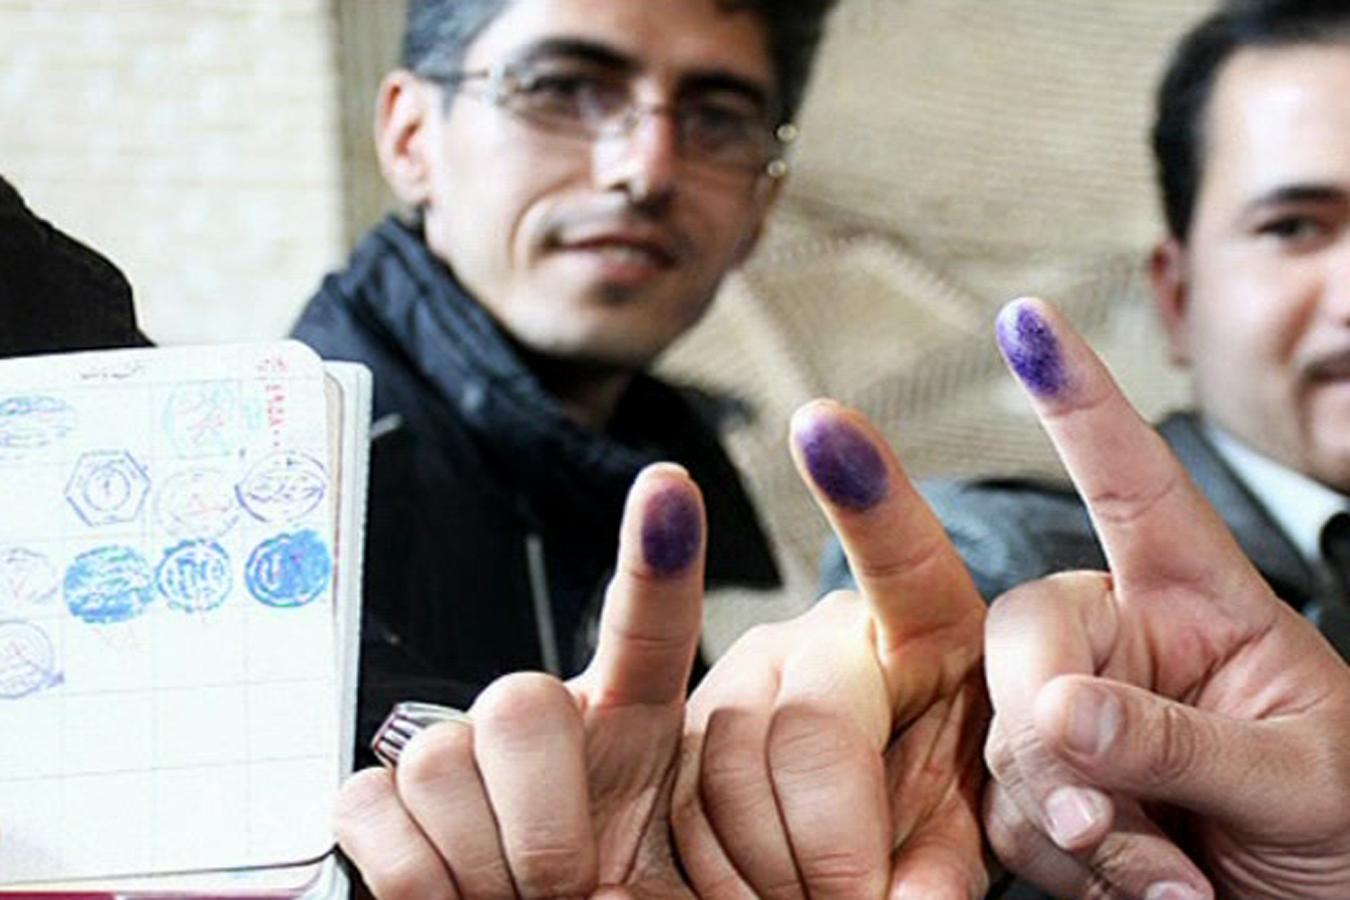 نتایج انتخابات شورای شهر آستانه اشرفیه